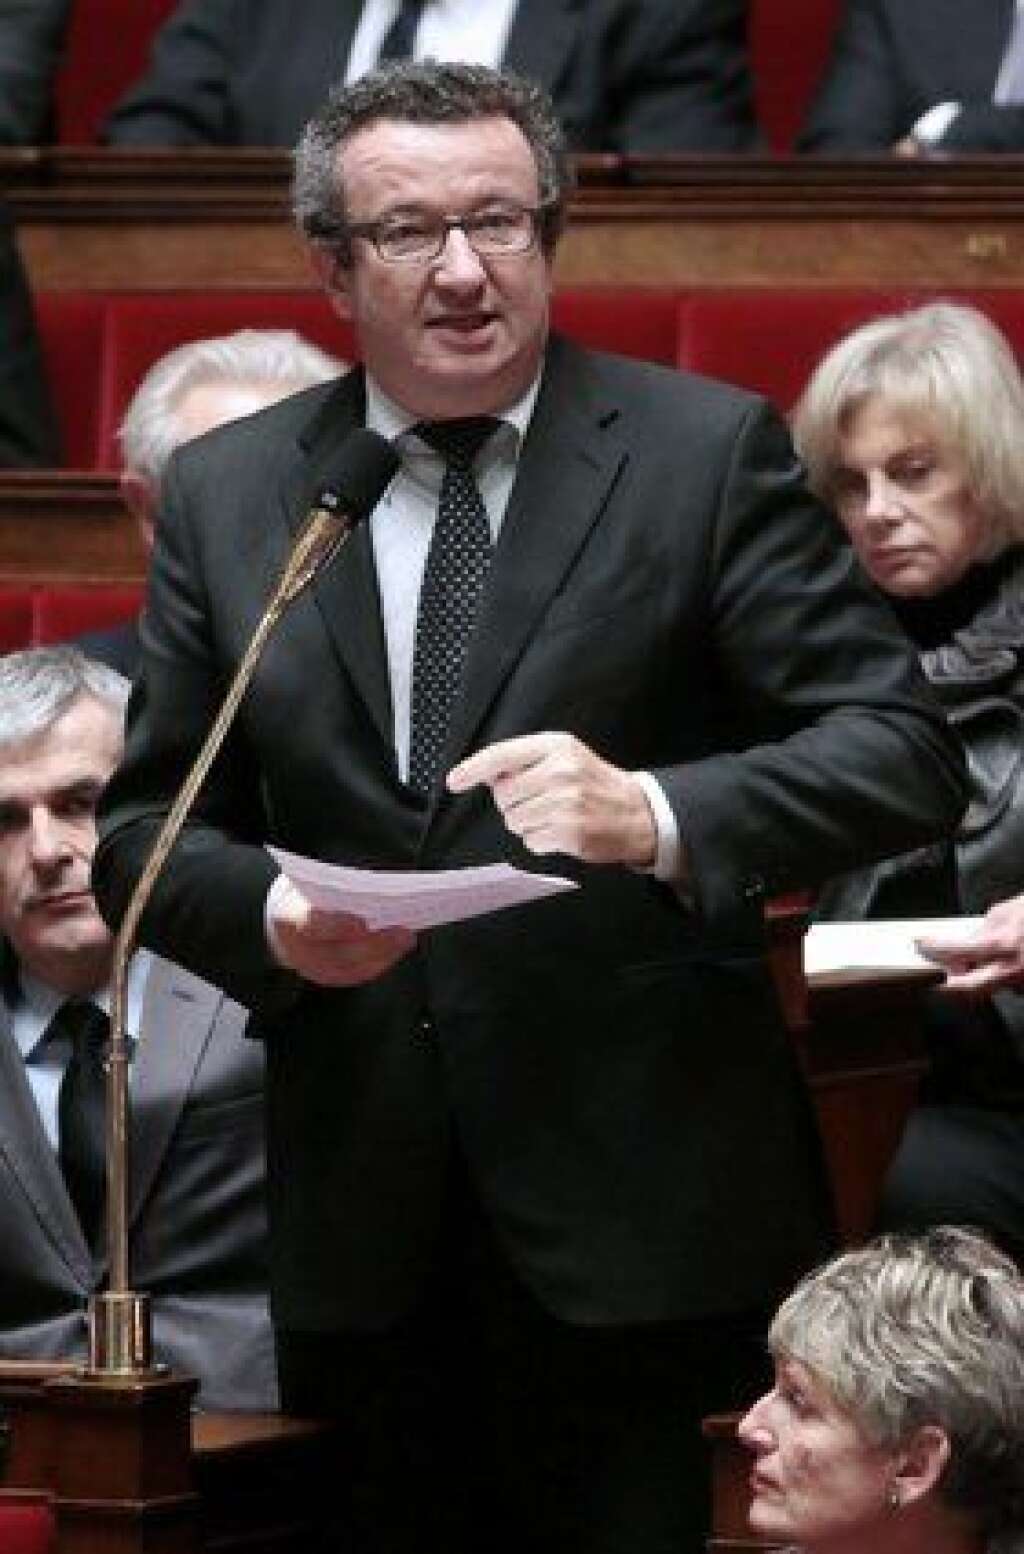 Christian Paul, député de la Nièvre - Proche de Martine Aubry, Christian Paul a voté pour la confiance au gouvernement Valls I mais s'est abstenu sur le programme de stabilité budgétaire.